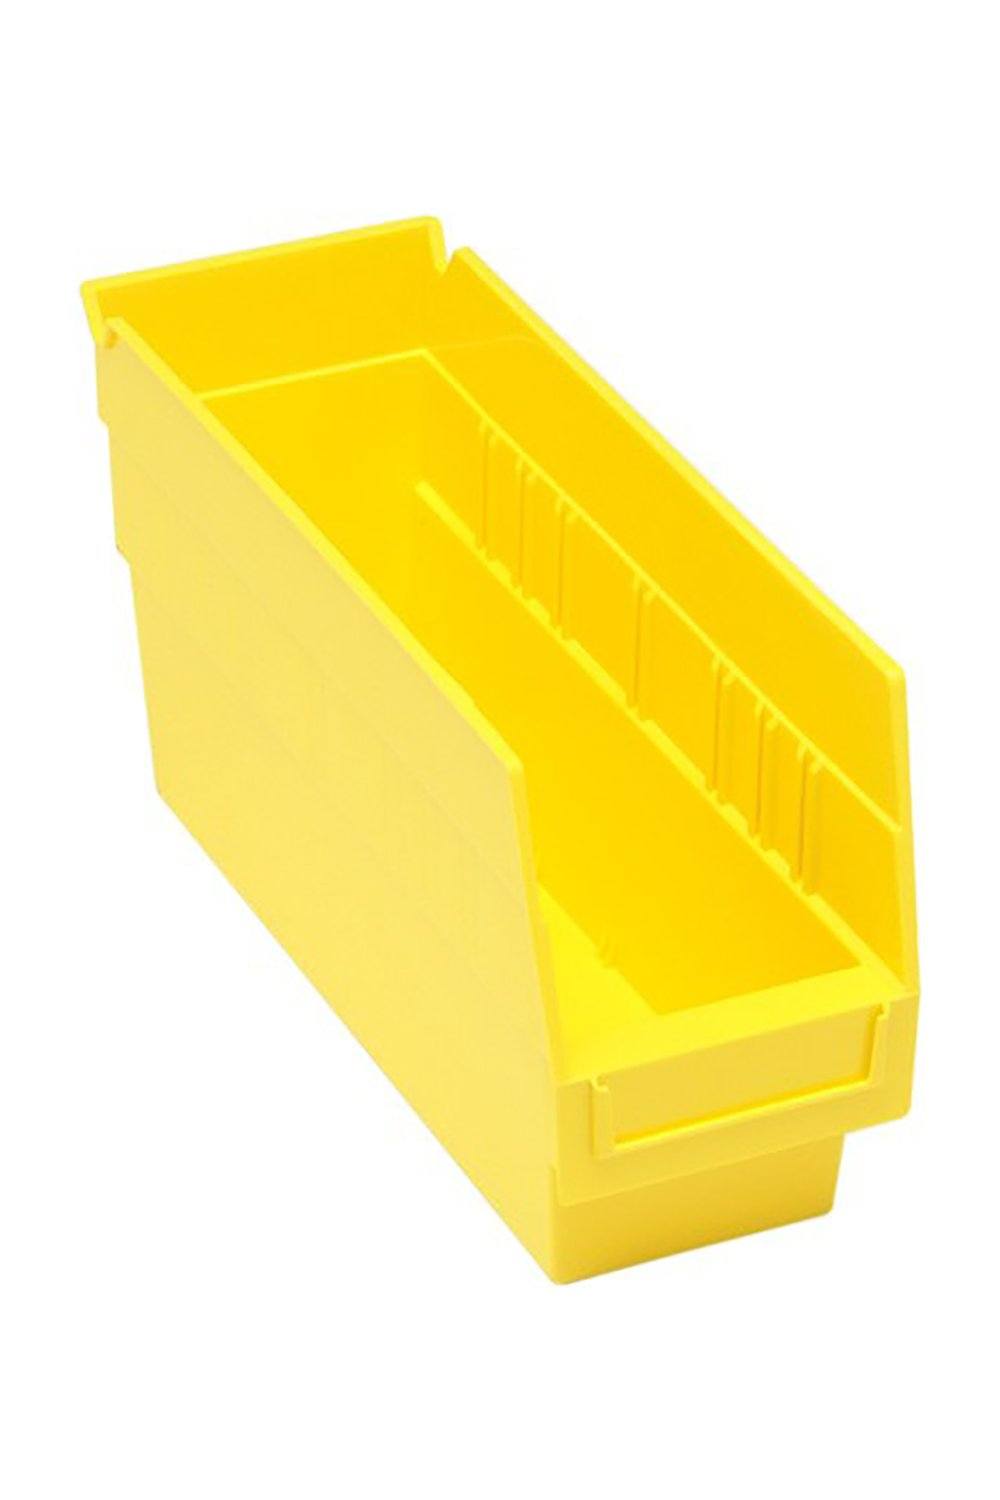 Shelf Bin for 12"D Shelves Bins & Containers Acart 11-5/8'' x 4-1/8'' x 6'' Yellow 